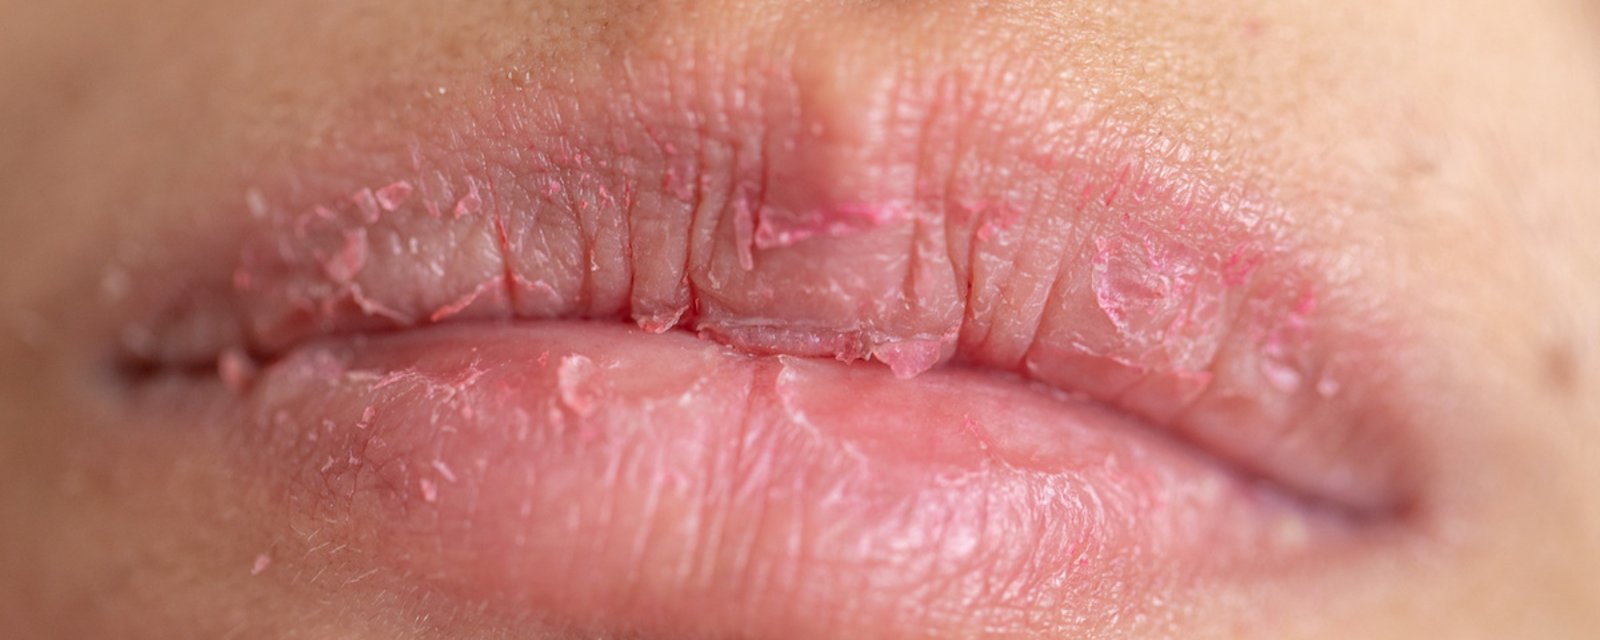 Lèvres gercées: 5 choses à ne pas faire